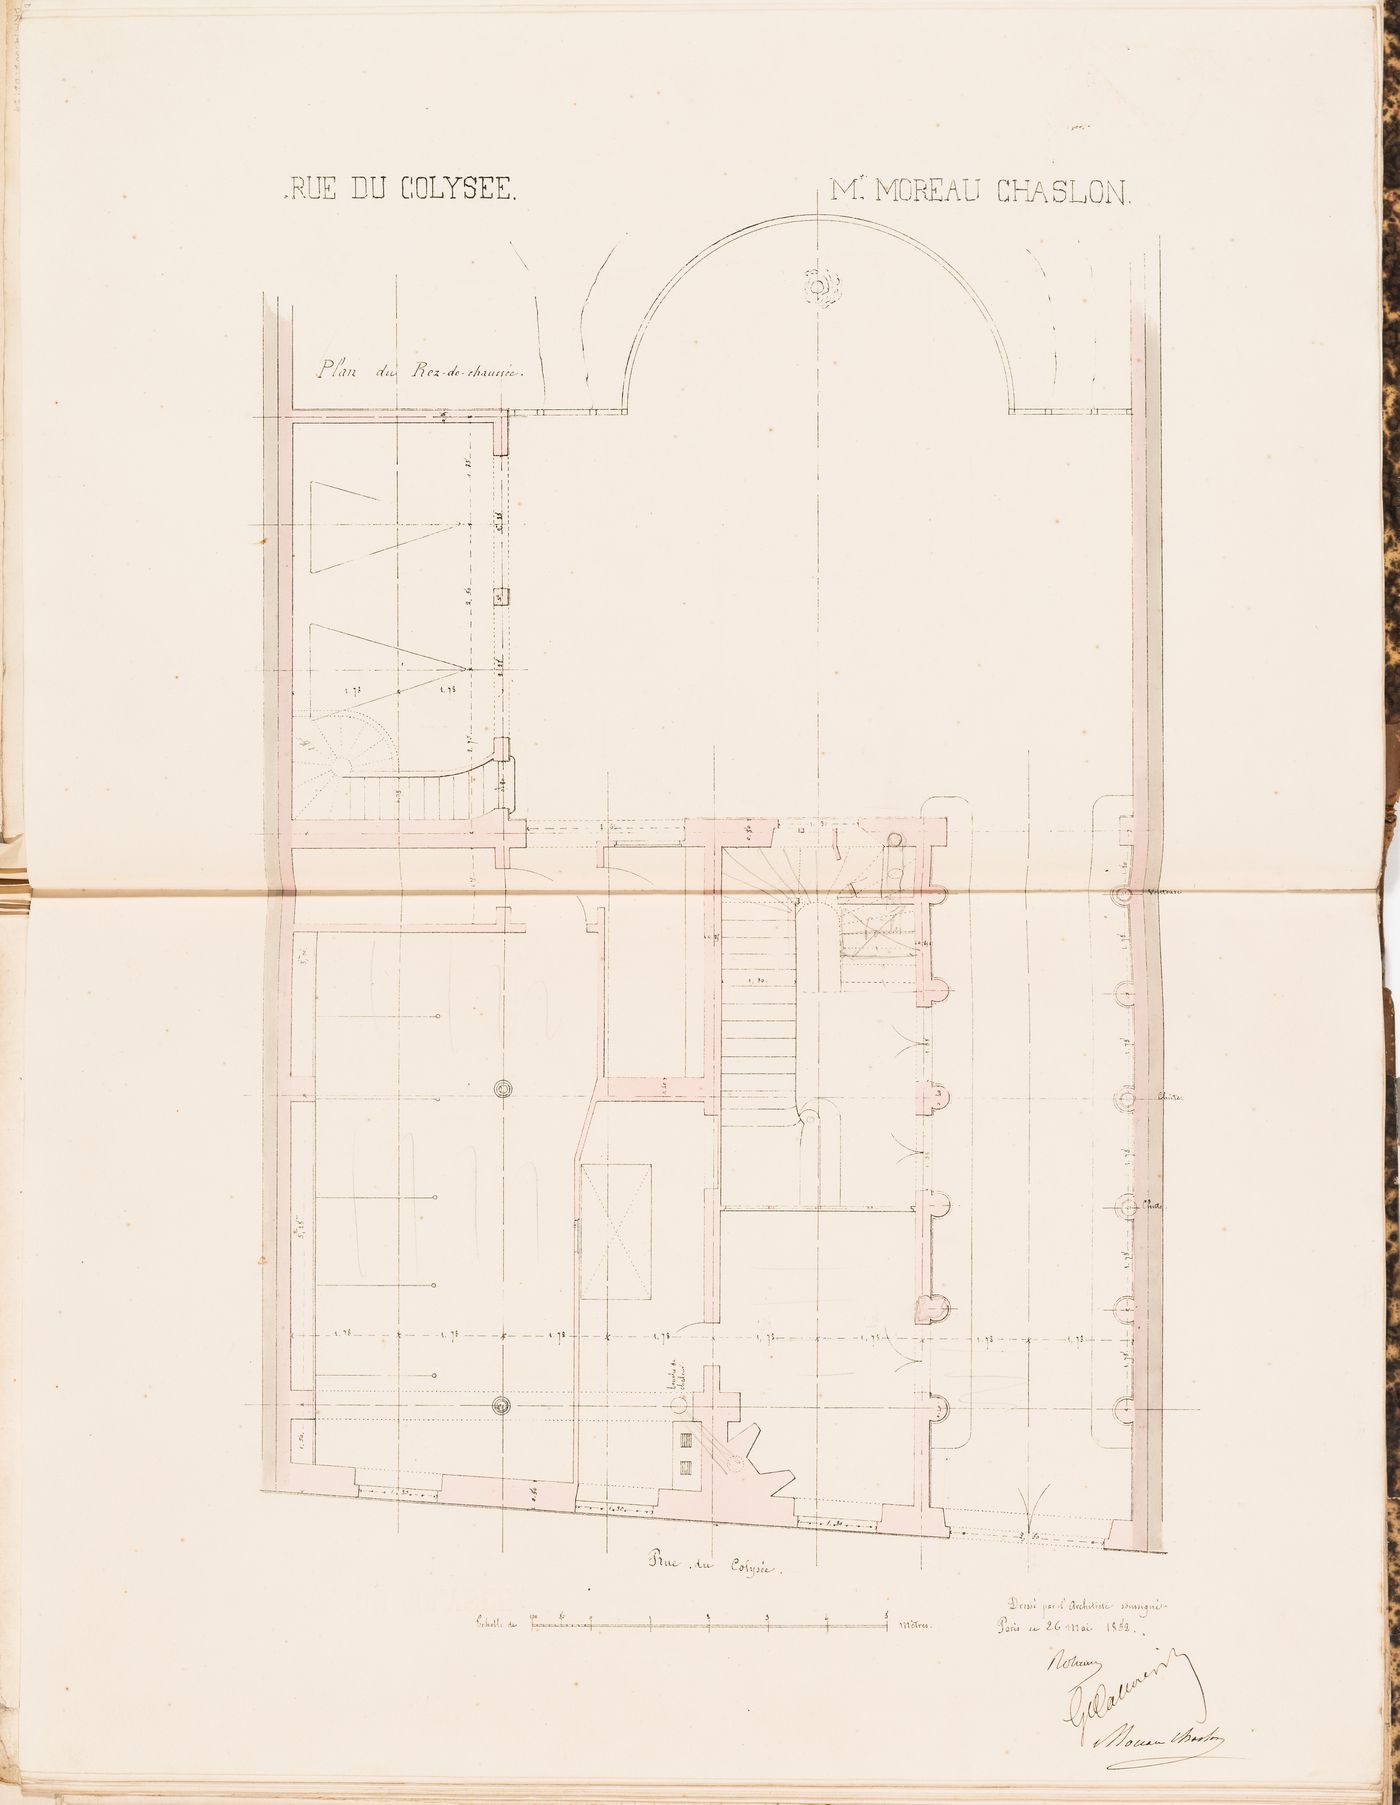 Contract drawing for a house for Monsieur Moreau Chaslon, rue du Colysée, Paris: Ground floor plan